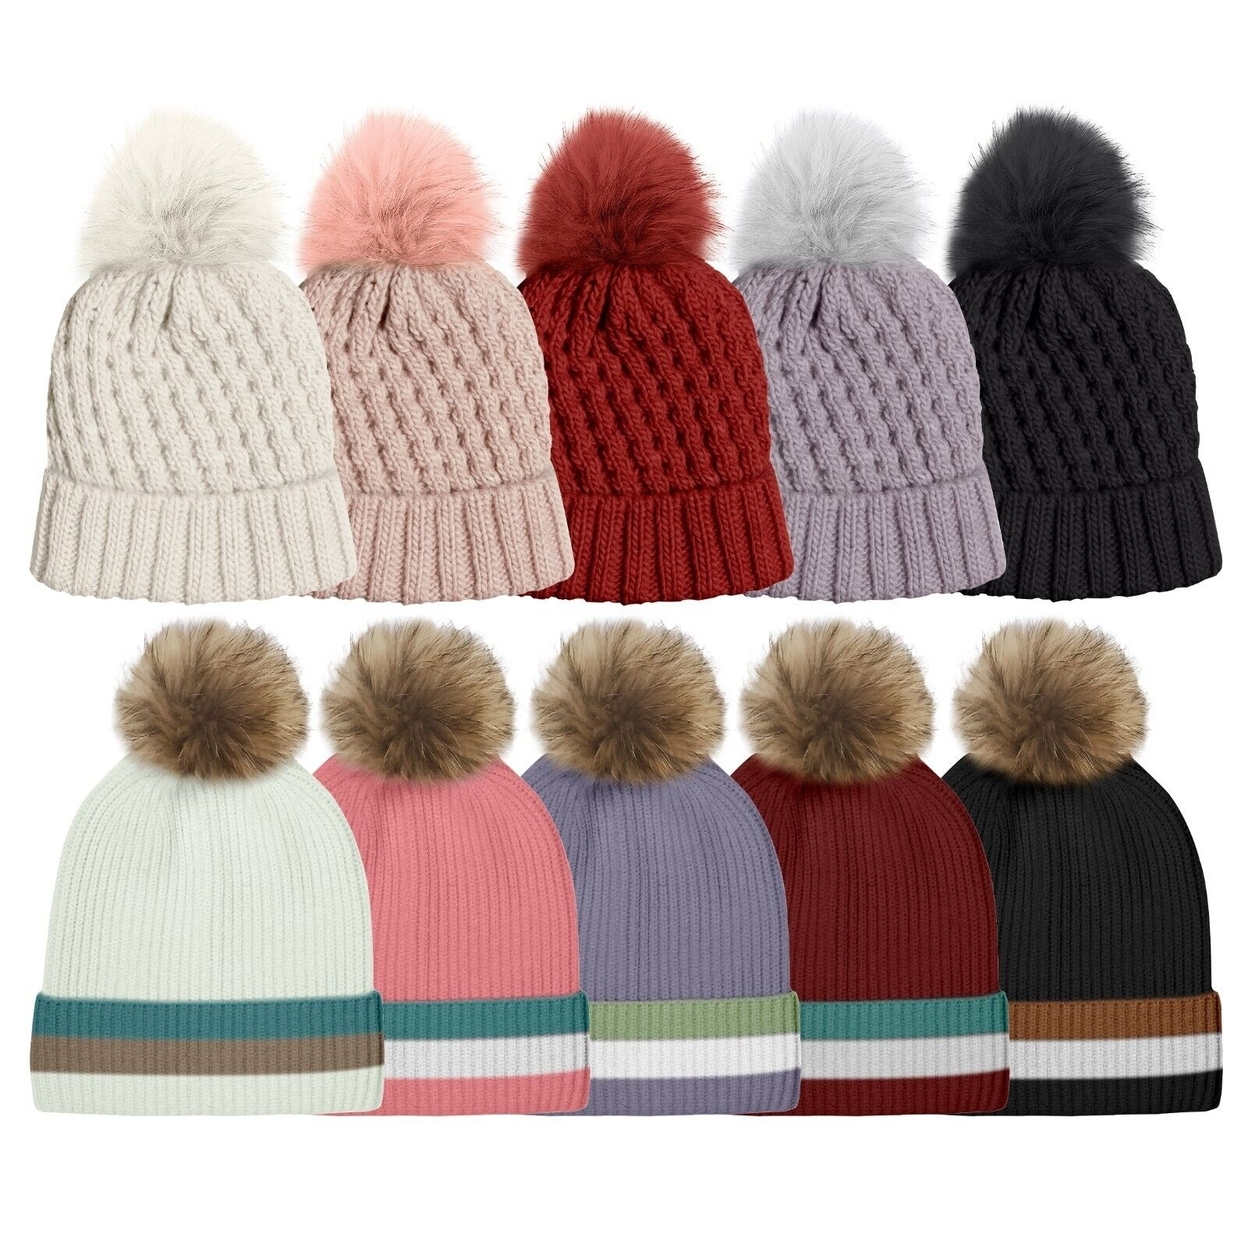 4-Pack: Women's Ultra-Soft Winter Warm Knit Feel Pom Pom Hat W/ Faux Fur Lining - Solid